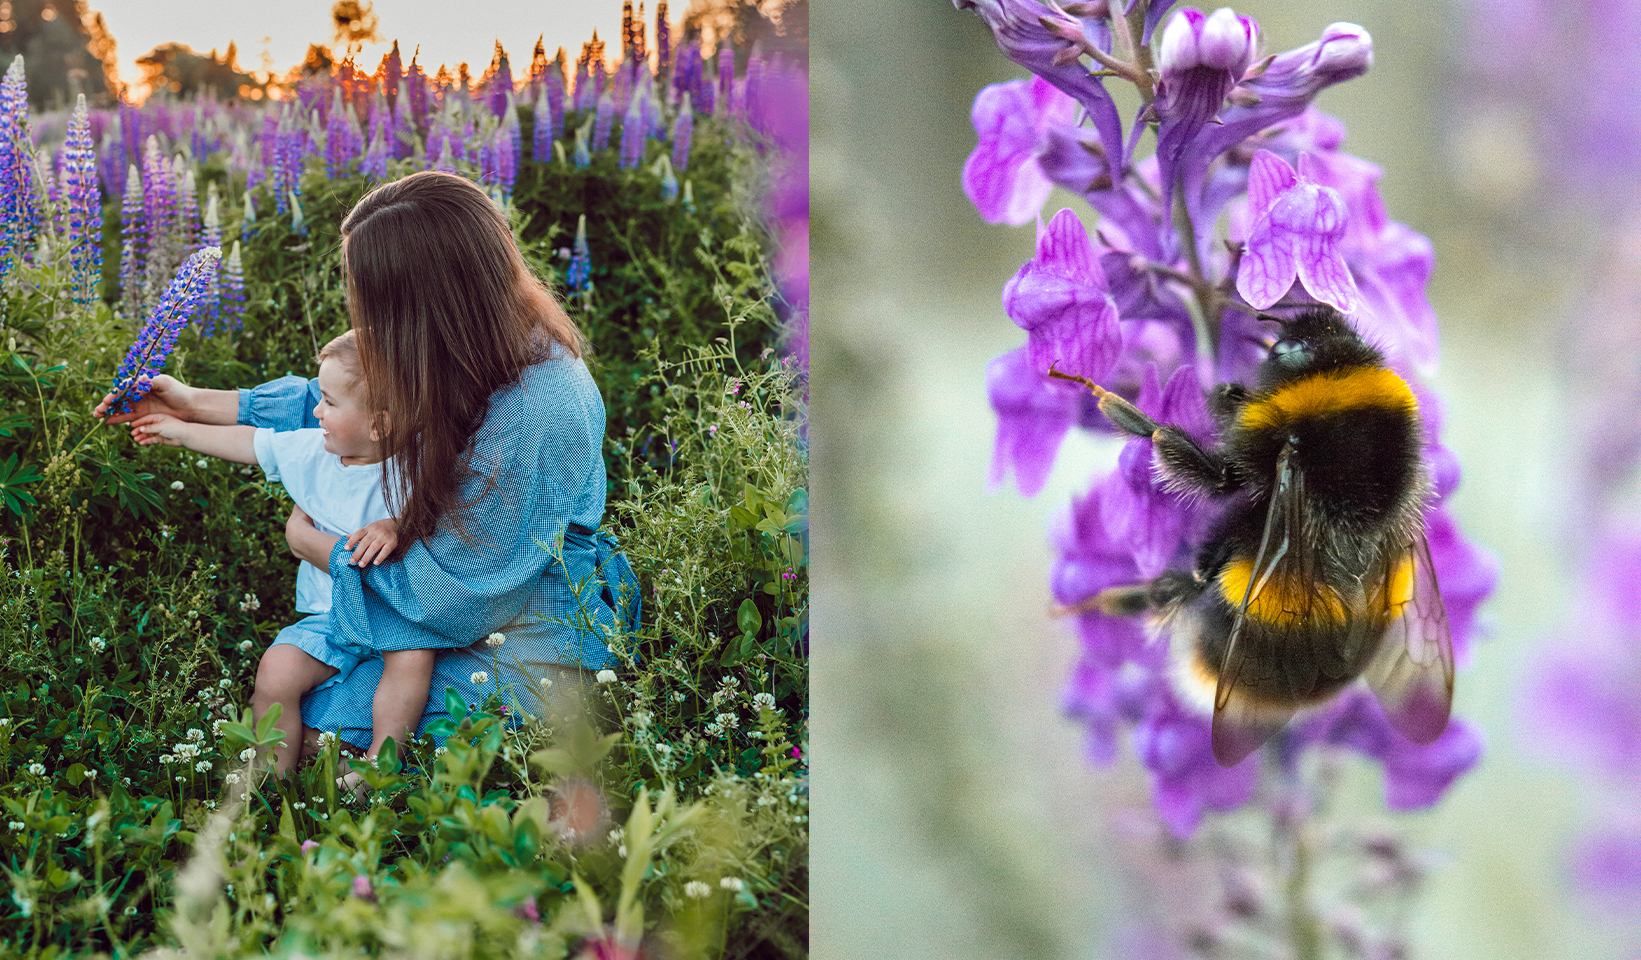 Photo d'une mère et son enfant dans un champs de fleurs.

Photo d'une abeille.